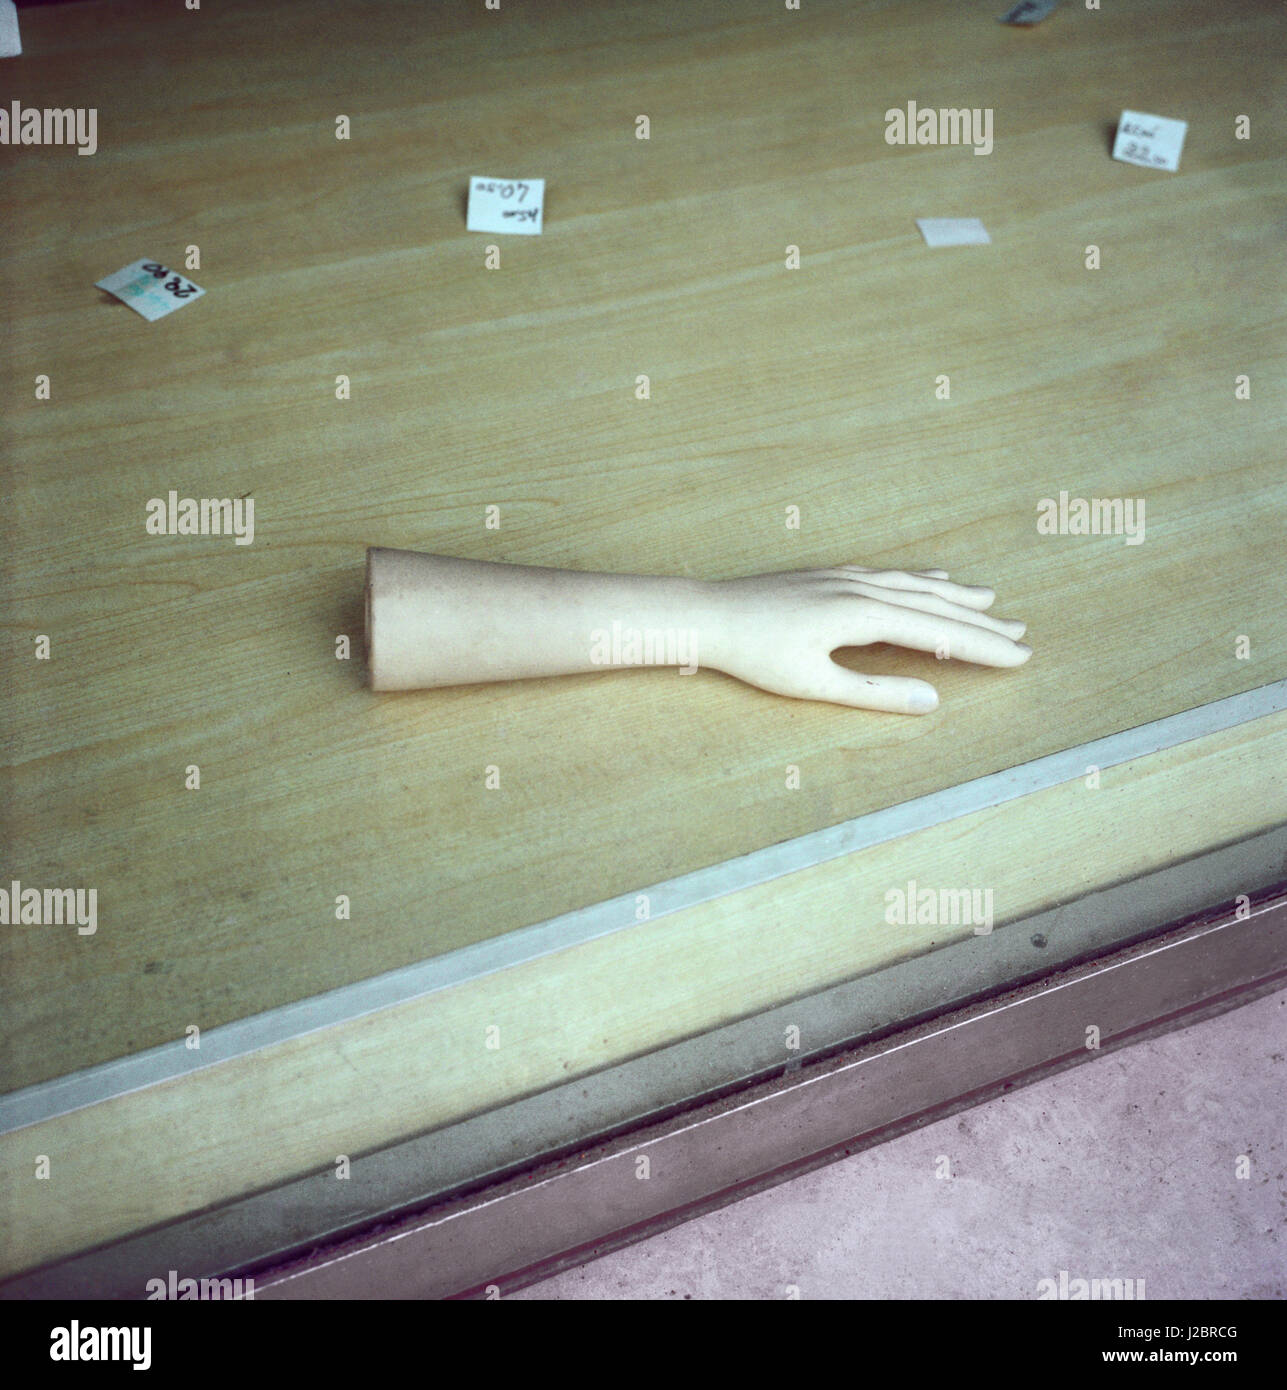 La muñeca de la mano izquierda ficticia sobre el piso en una ventana y etiquetas de precio de fabricación alrededor Foto de stock